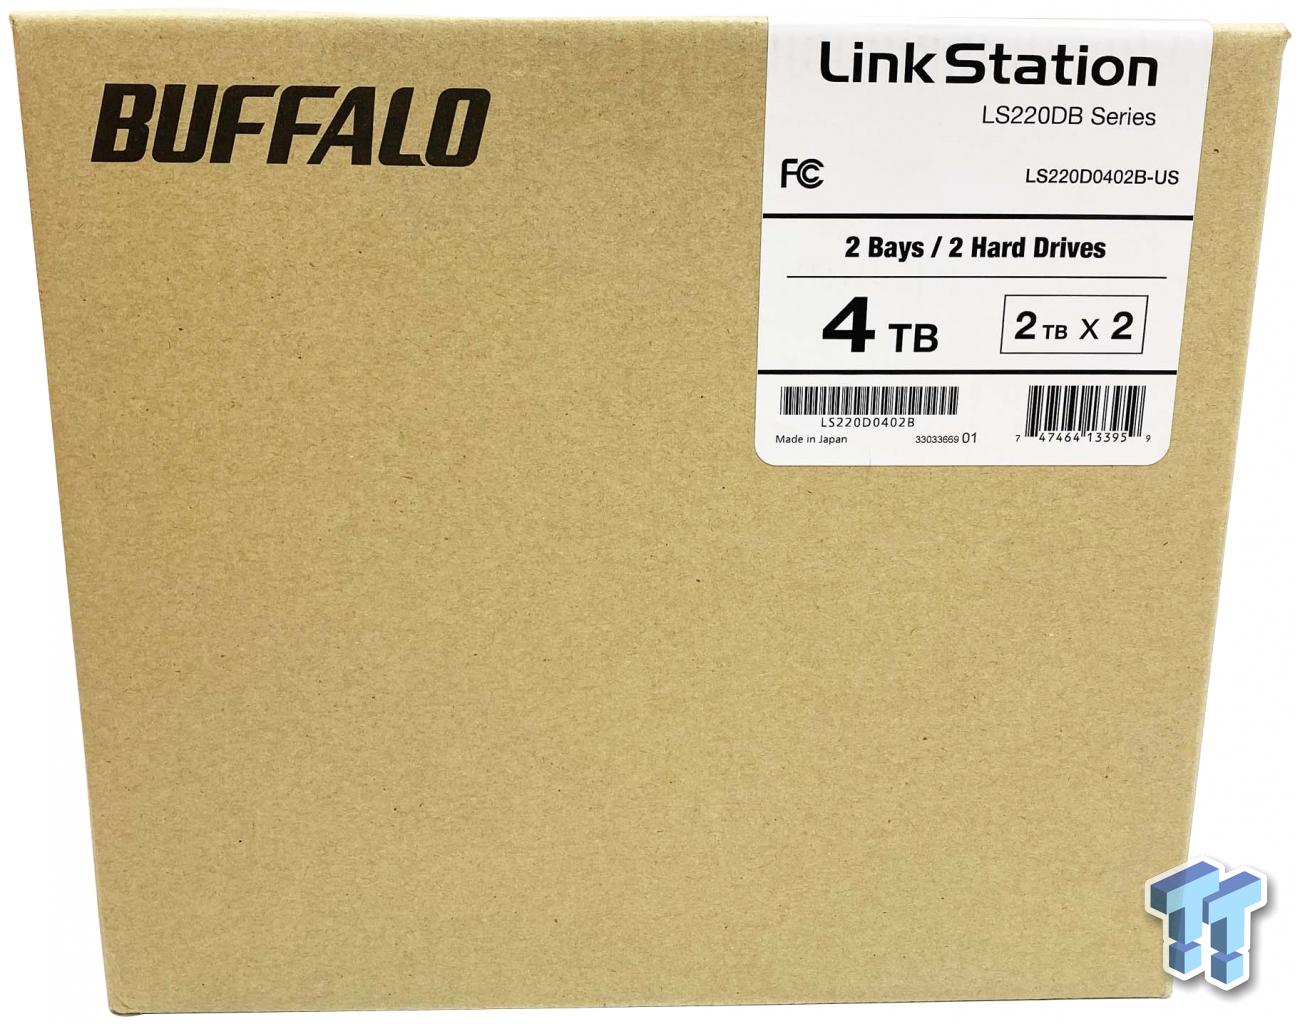 Buffalo LinkStation SOHO 4TB NAS Review | TweakTown